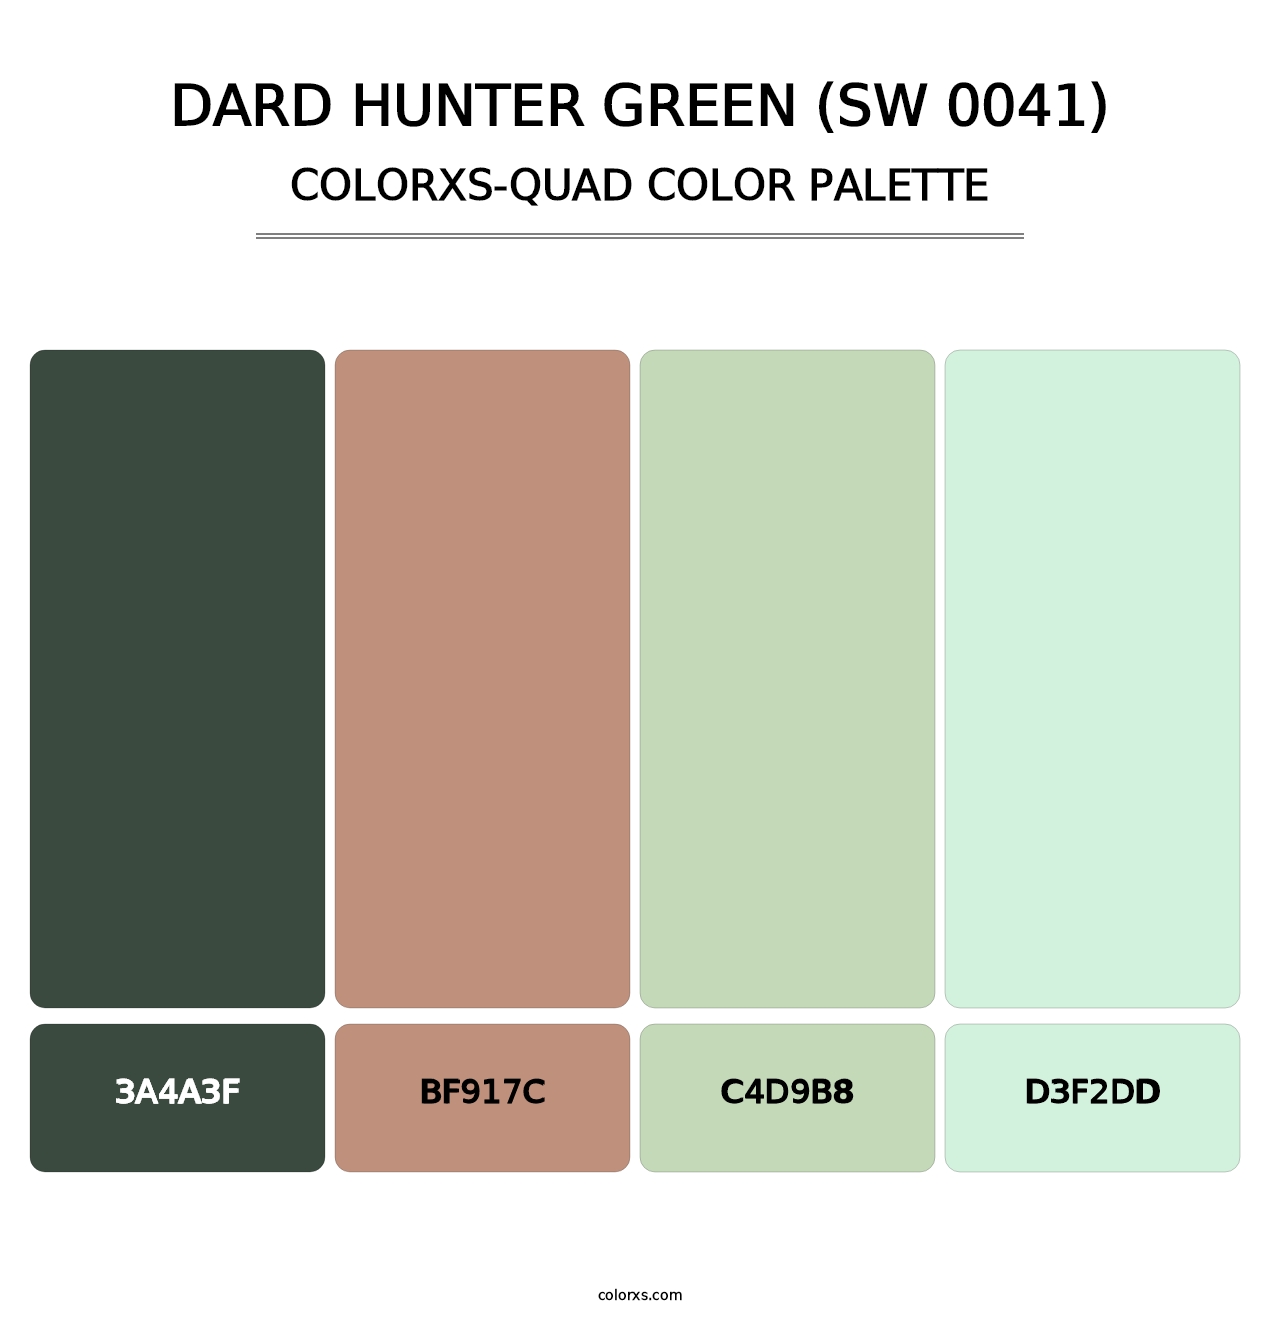 Dard Hunter Green (SW 0041) - Colorxs Quad Palette